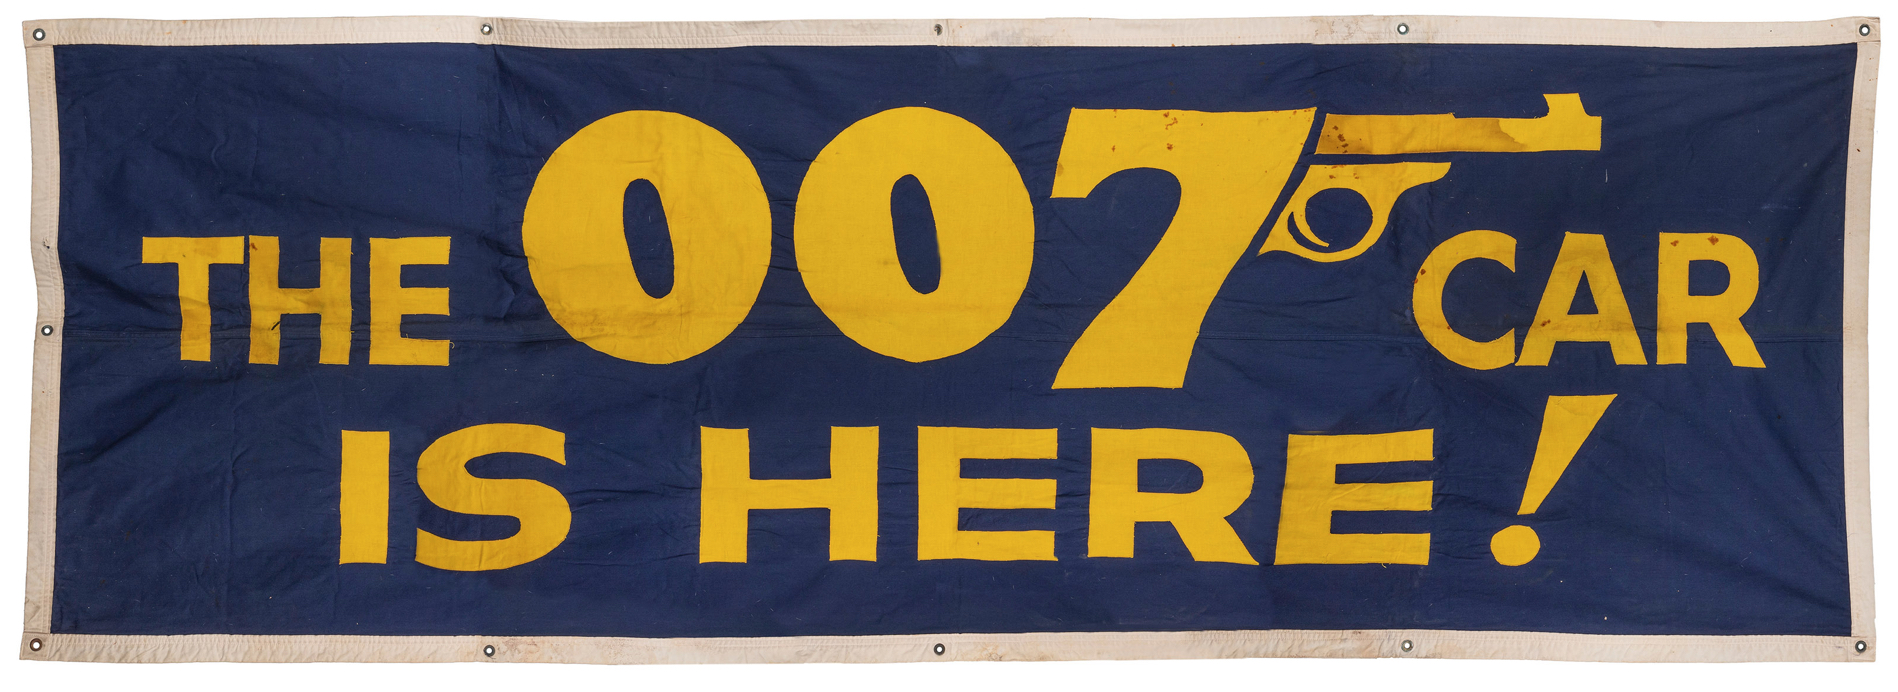 James Bond car promotional banner, $3,600